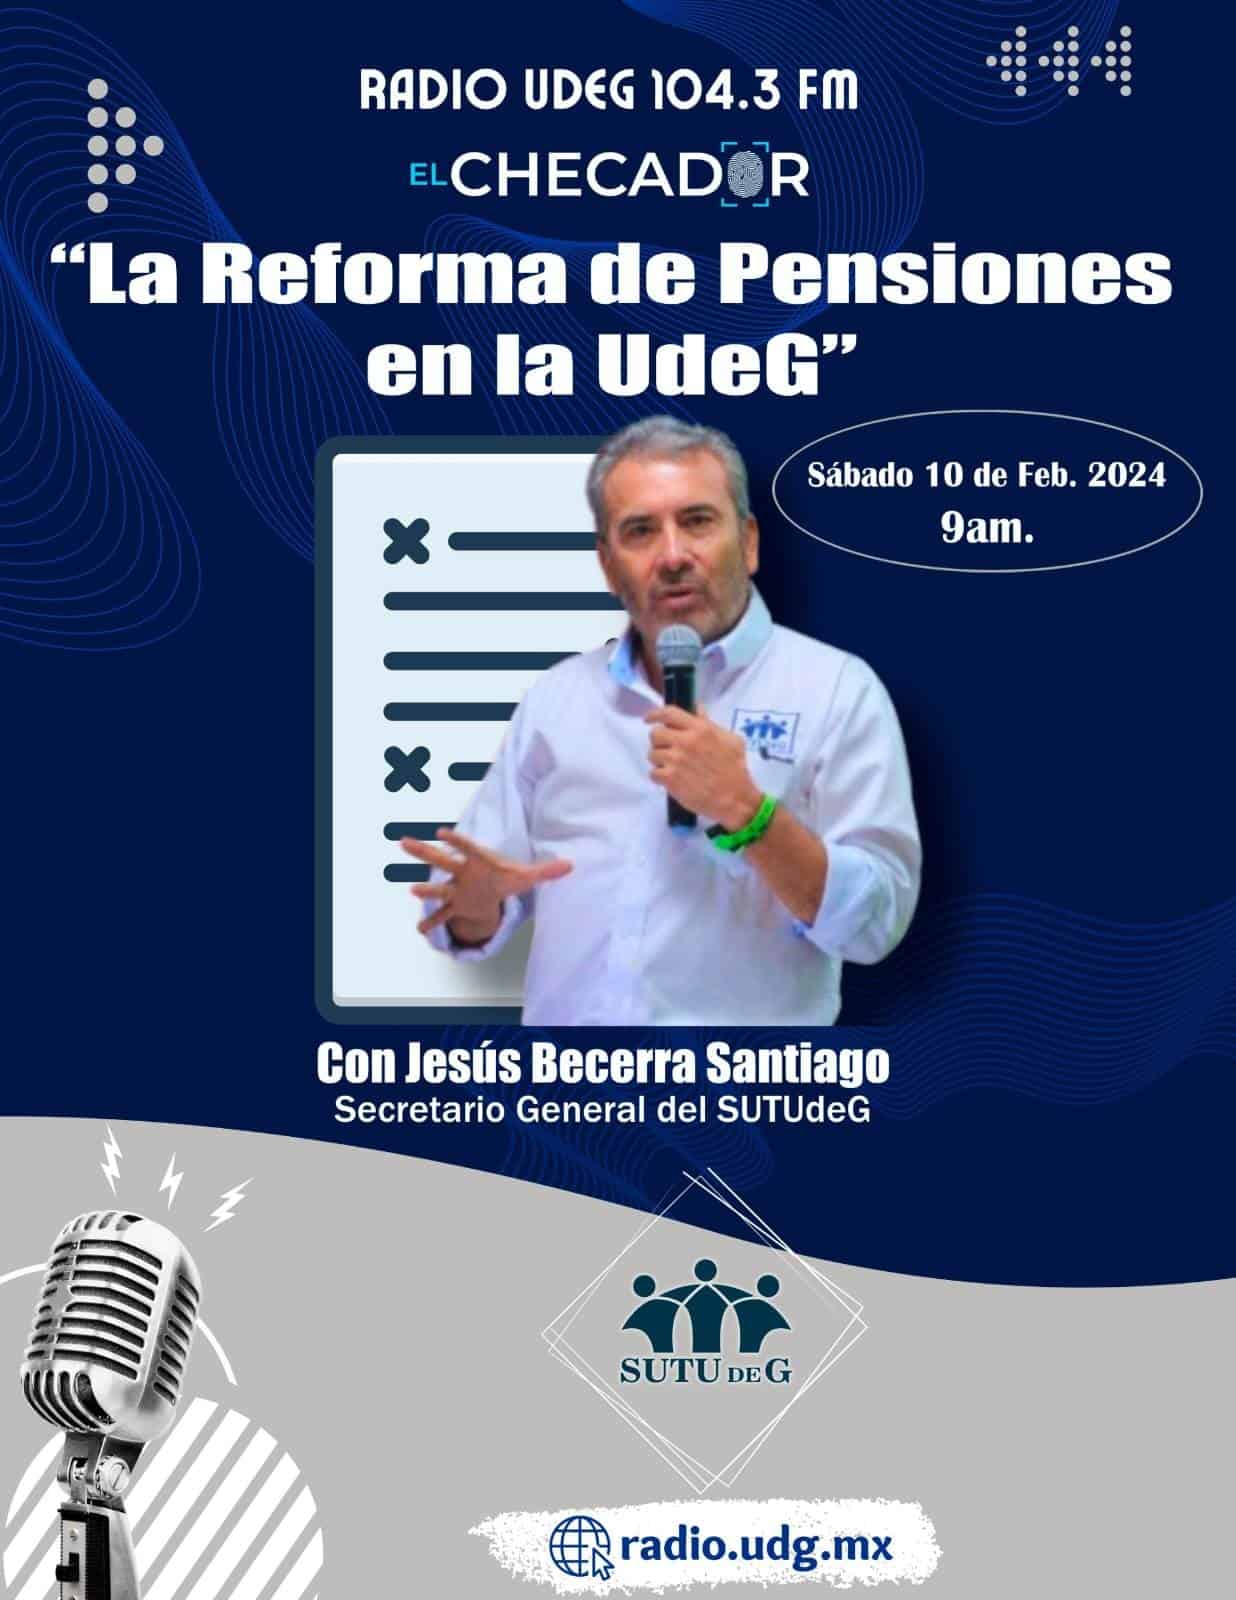 El Checador - Sa. 10 Feb 2024 - Le Reforma de Pensiones en la UdeG